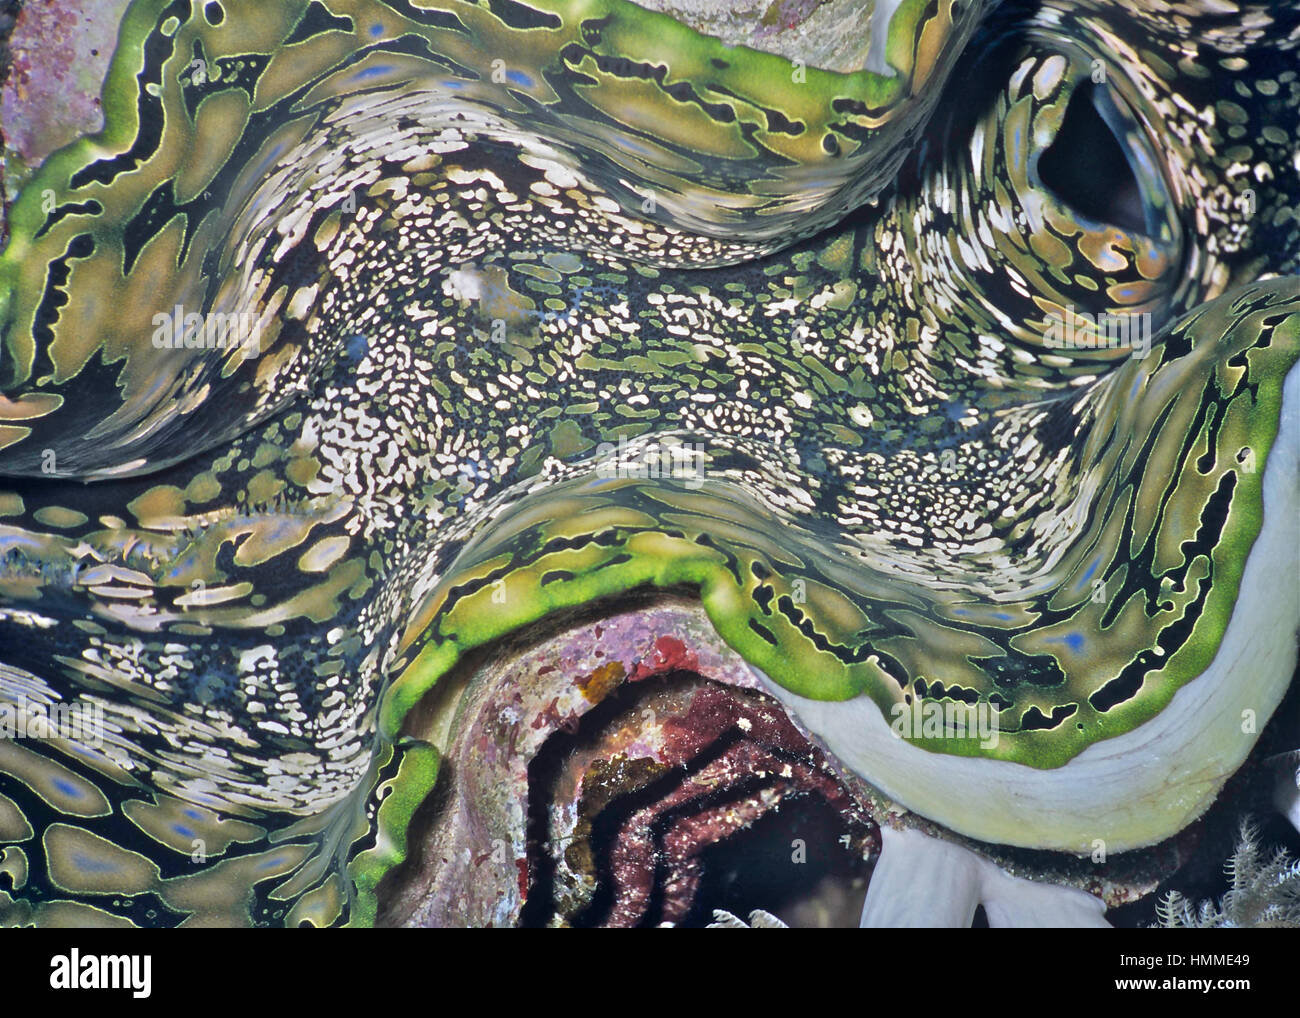 Dettagli da un gigante clam (Tridacna gigas) che mostra il pattern colorati formata da colonie di relazione simbiotica dinoflagellato alghe nei molluschi mantello. Foto Stock